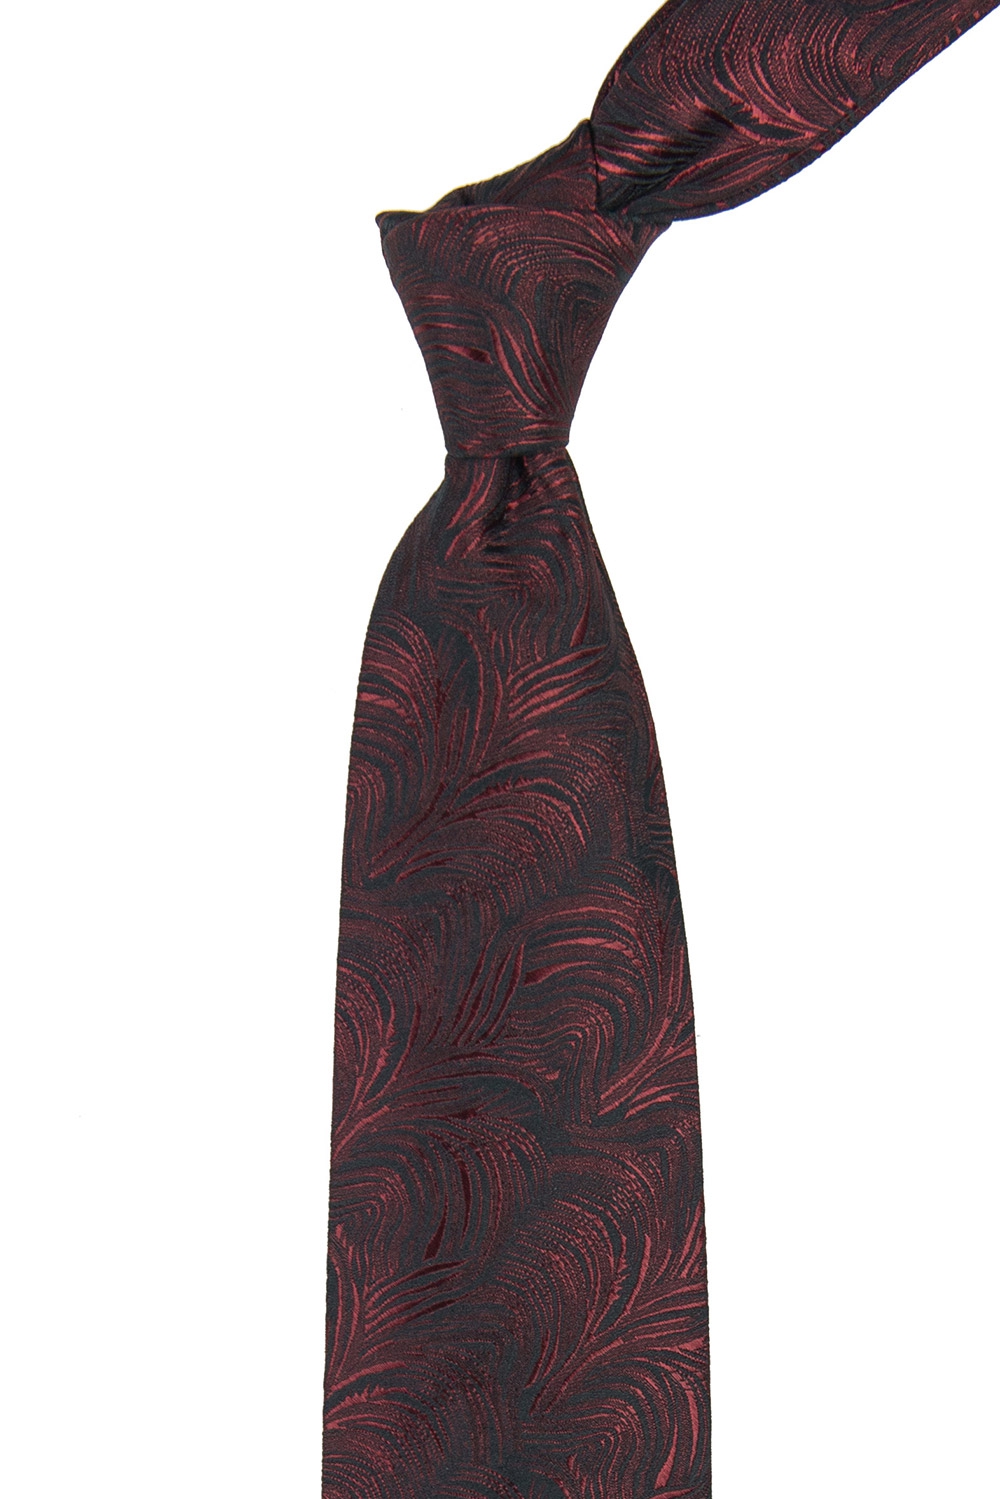 Cravata grena print floral 1